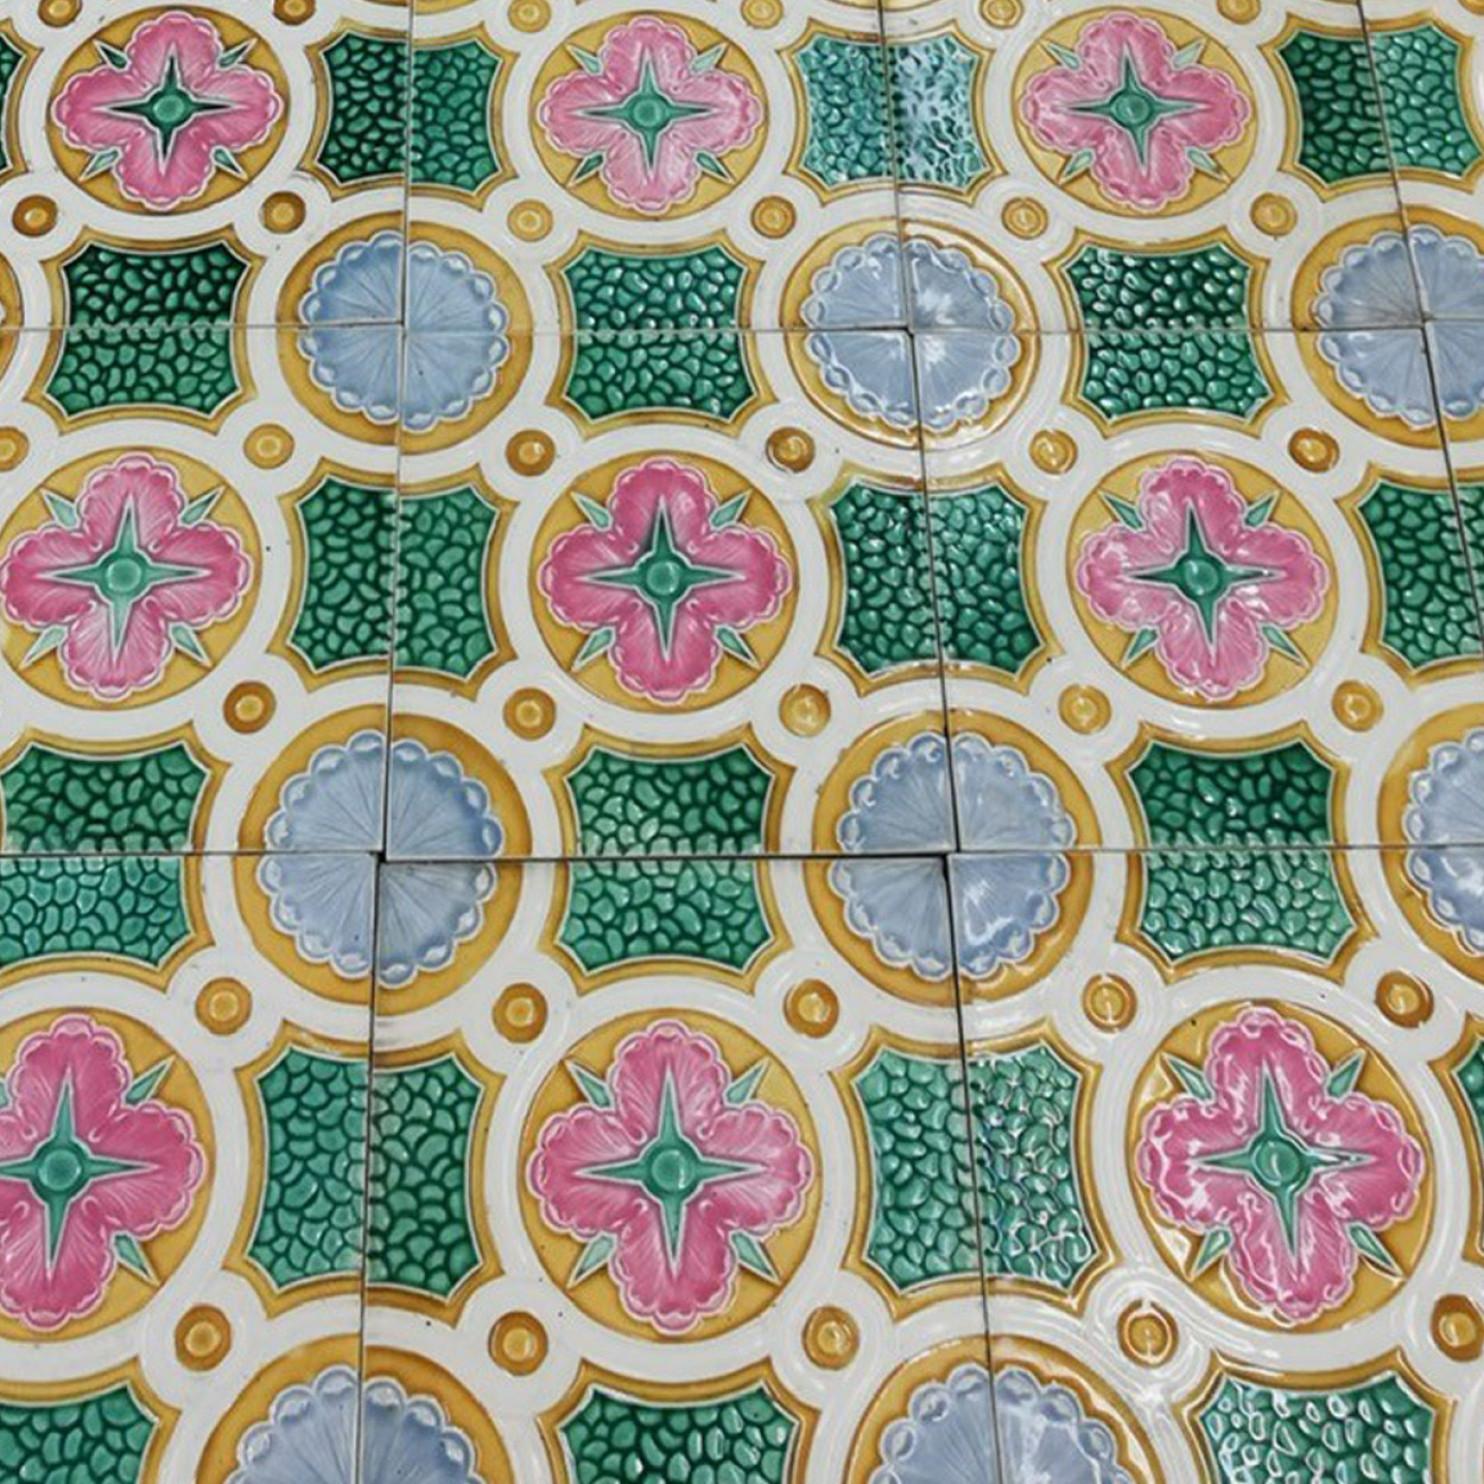 Colorful Antique Ceramic Tiles by Faiencerie de Bouffioulx, Belgium 1920s For Sale 3